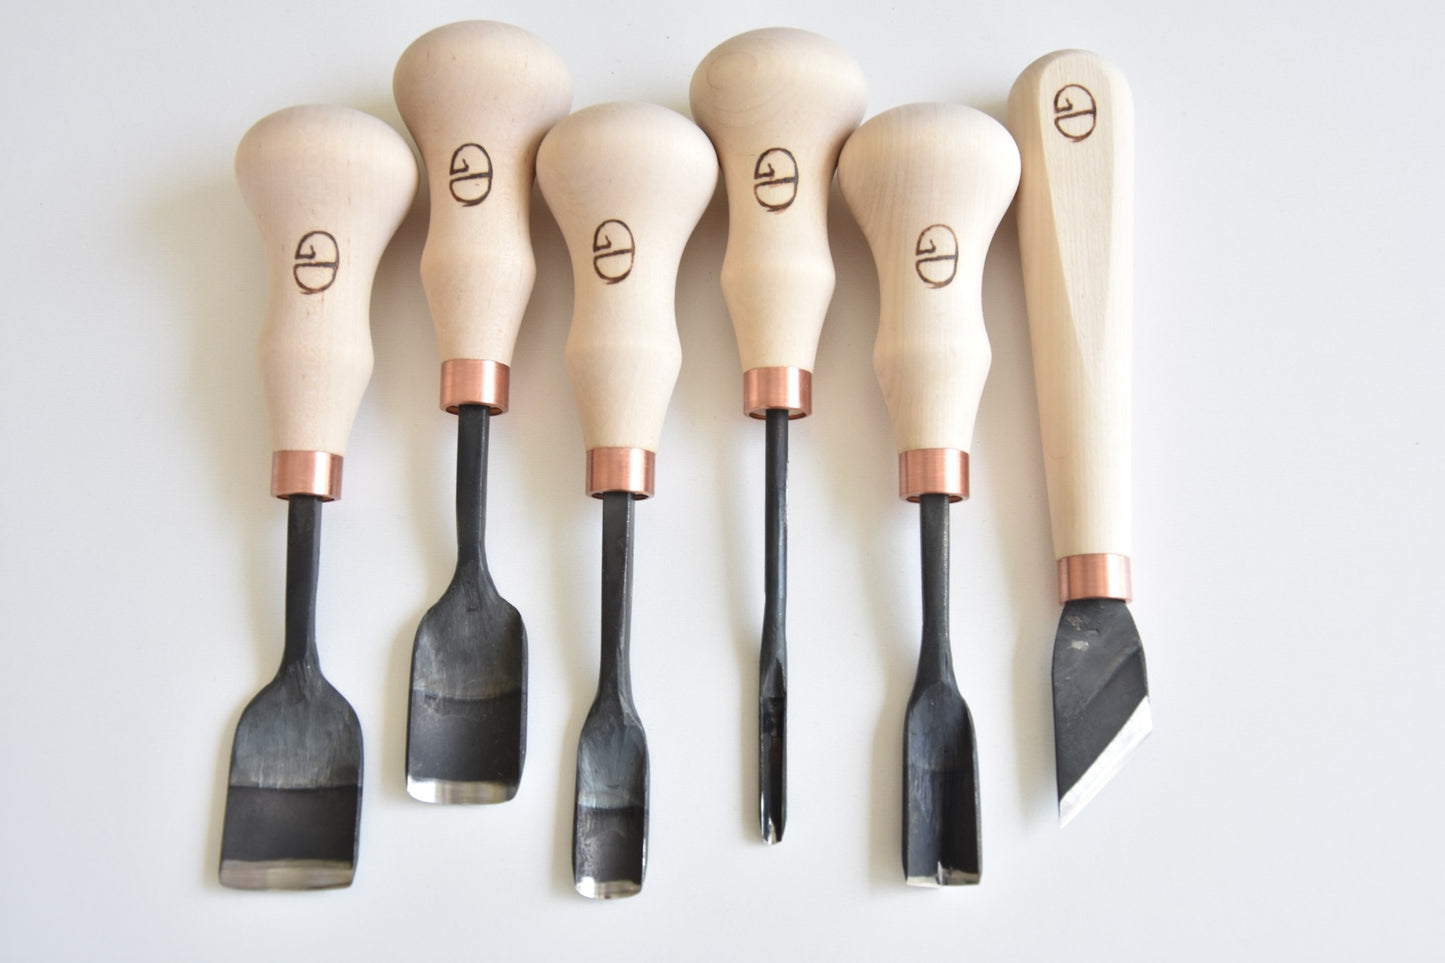 6 piece wood carving tool set